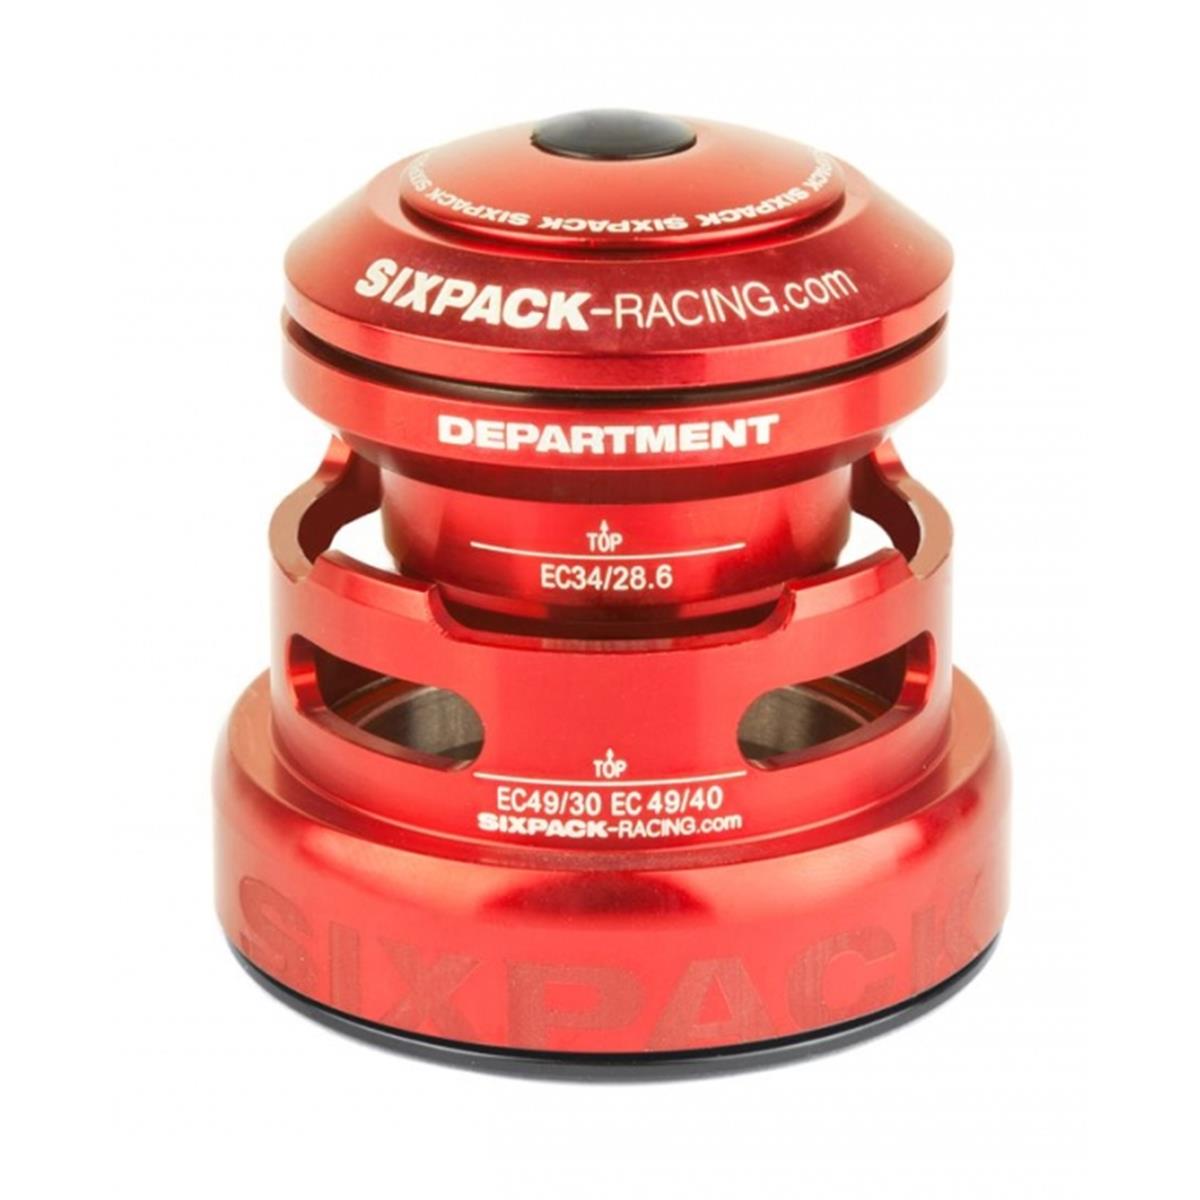 Sixpack Serie Sterzo Department 2in1 Red, EC34 49/28.6 I EC49/30 & EC34/28.6 I EC49/40